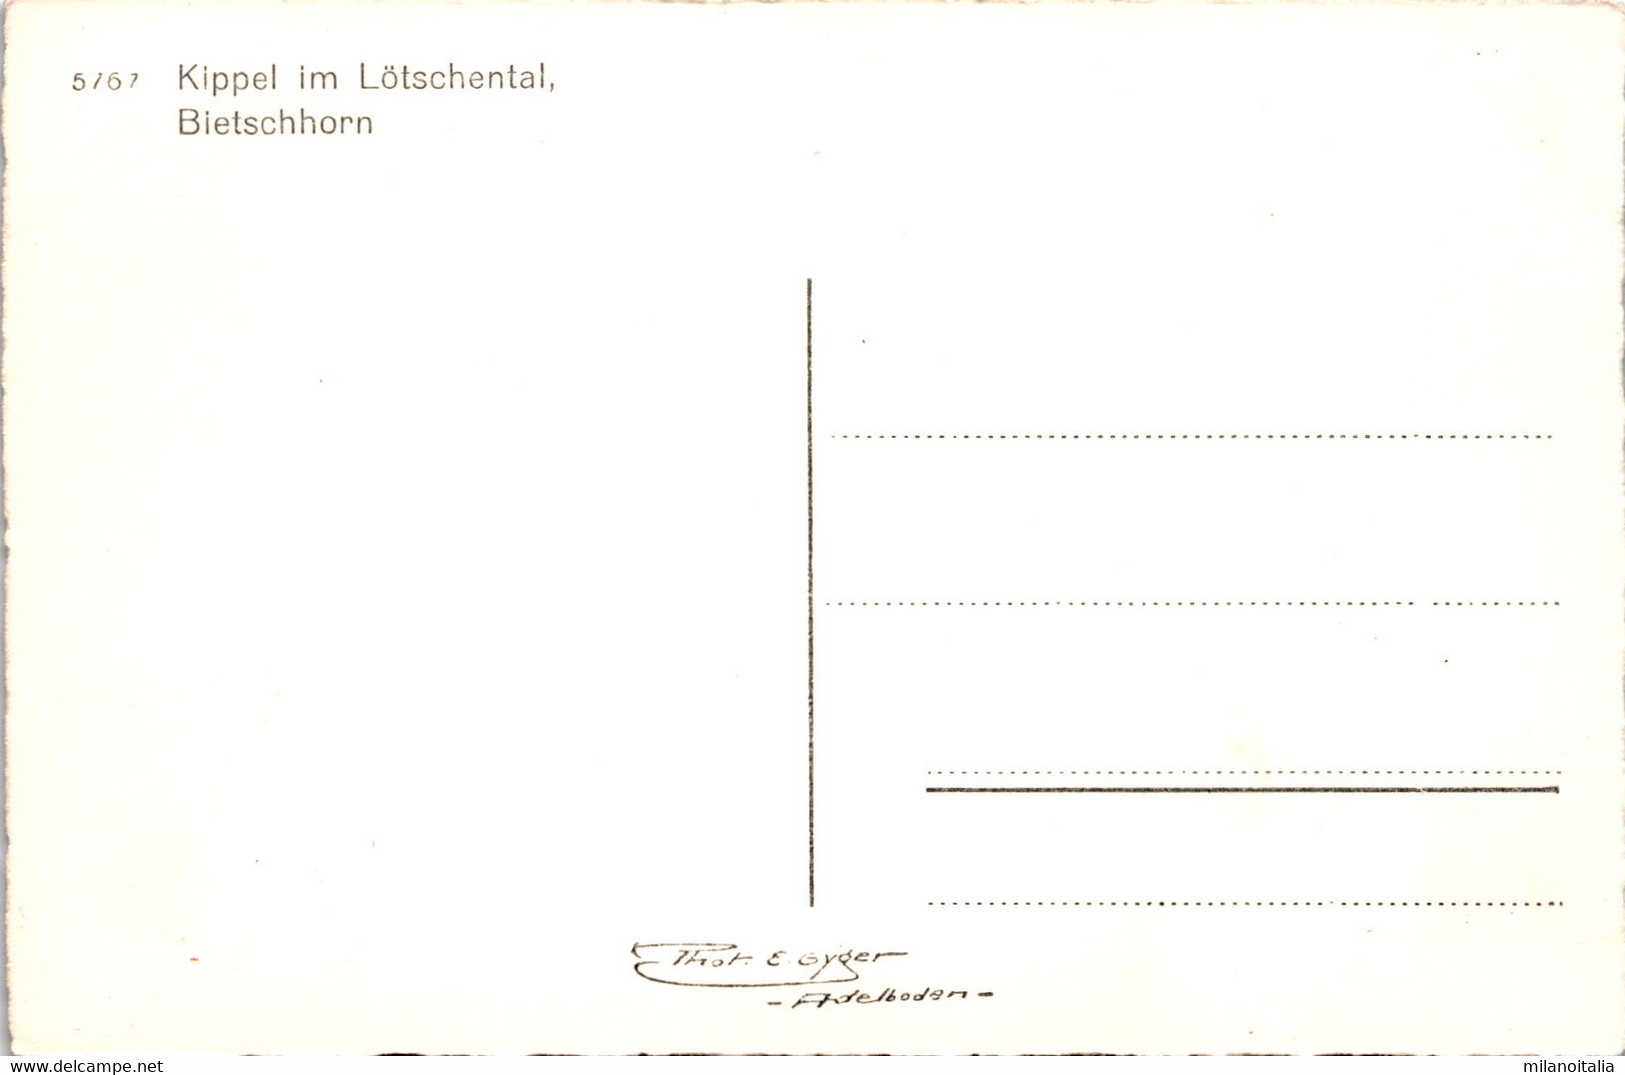 Kippel Im Lötschental (5767) - Phot. Gyger - Kippel